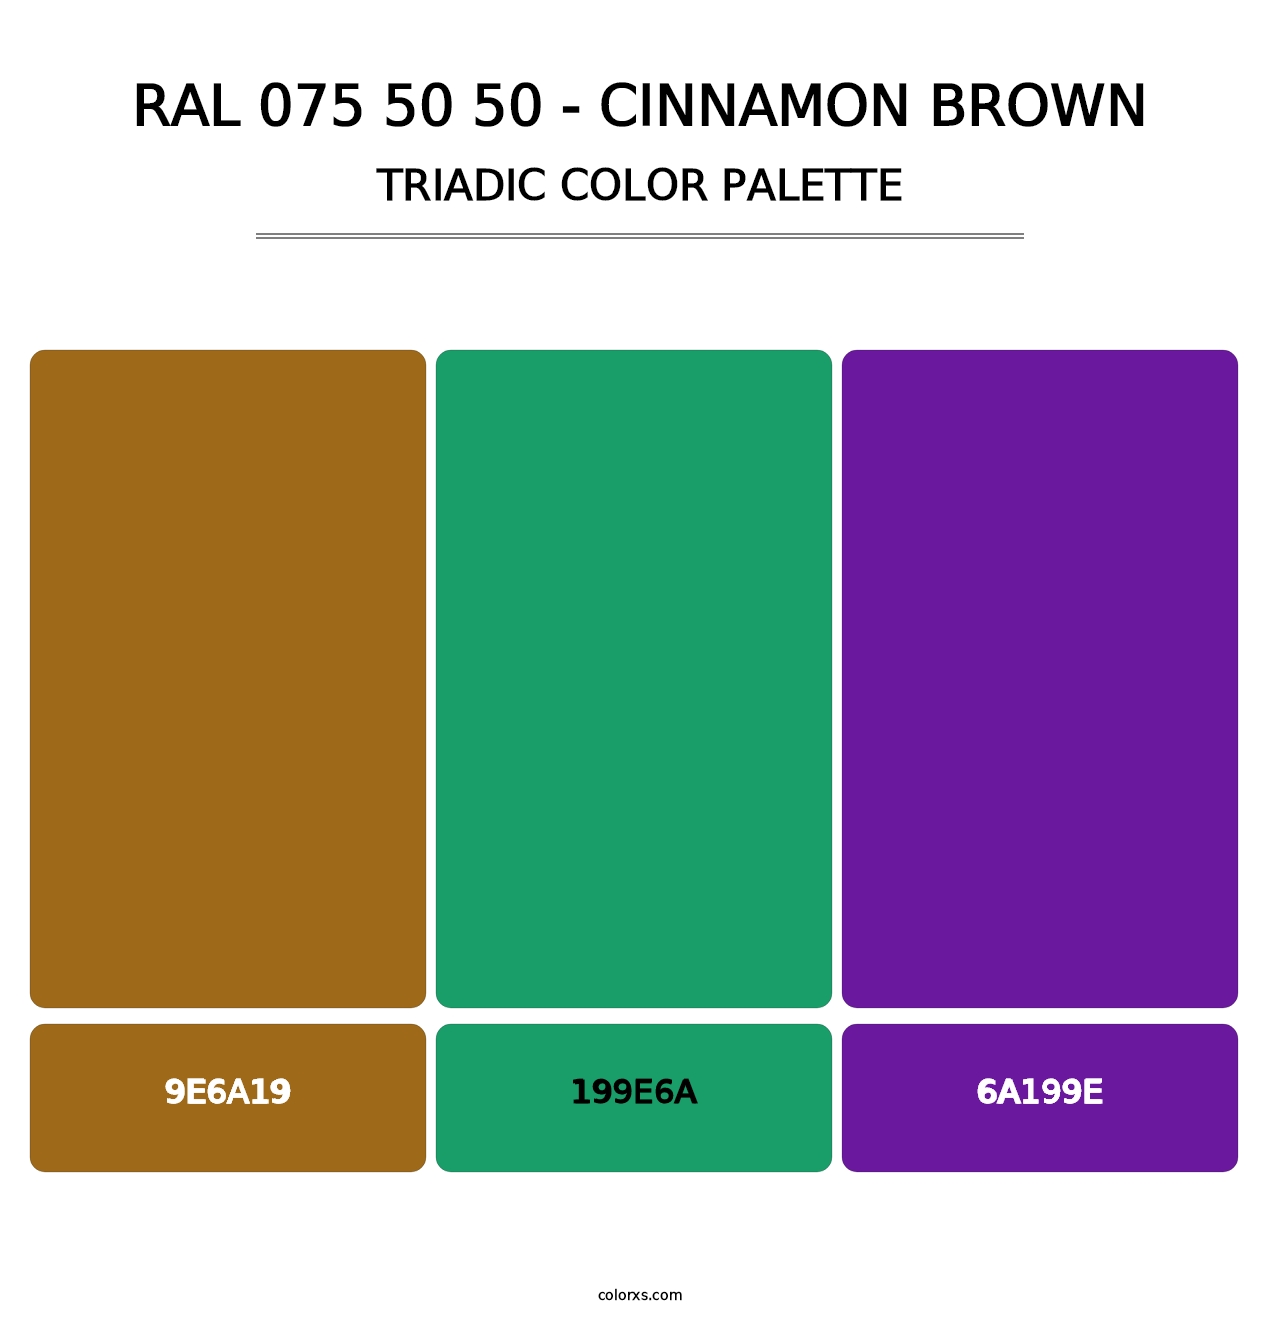 RAL 075 50 50 - Cinnamon Brown - Triadic Color Palette